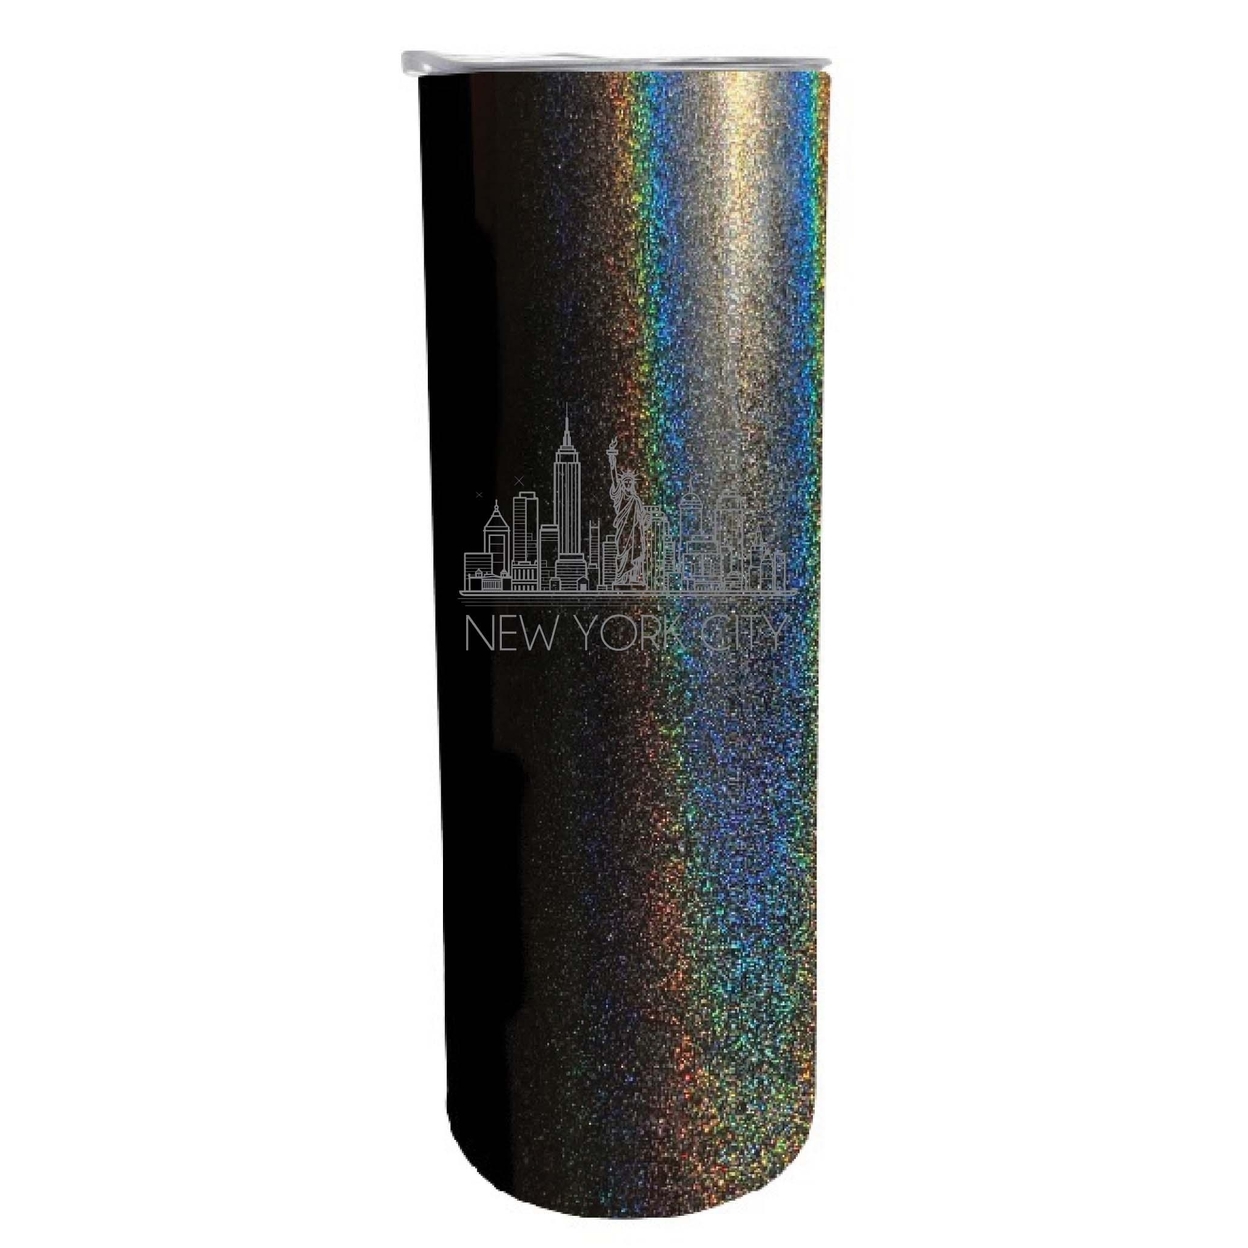 New York City Souvenir 20 Oz Engraved Insulated Skinny Tumbler Glitter - Black Glitter,,2-Pack